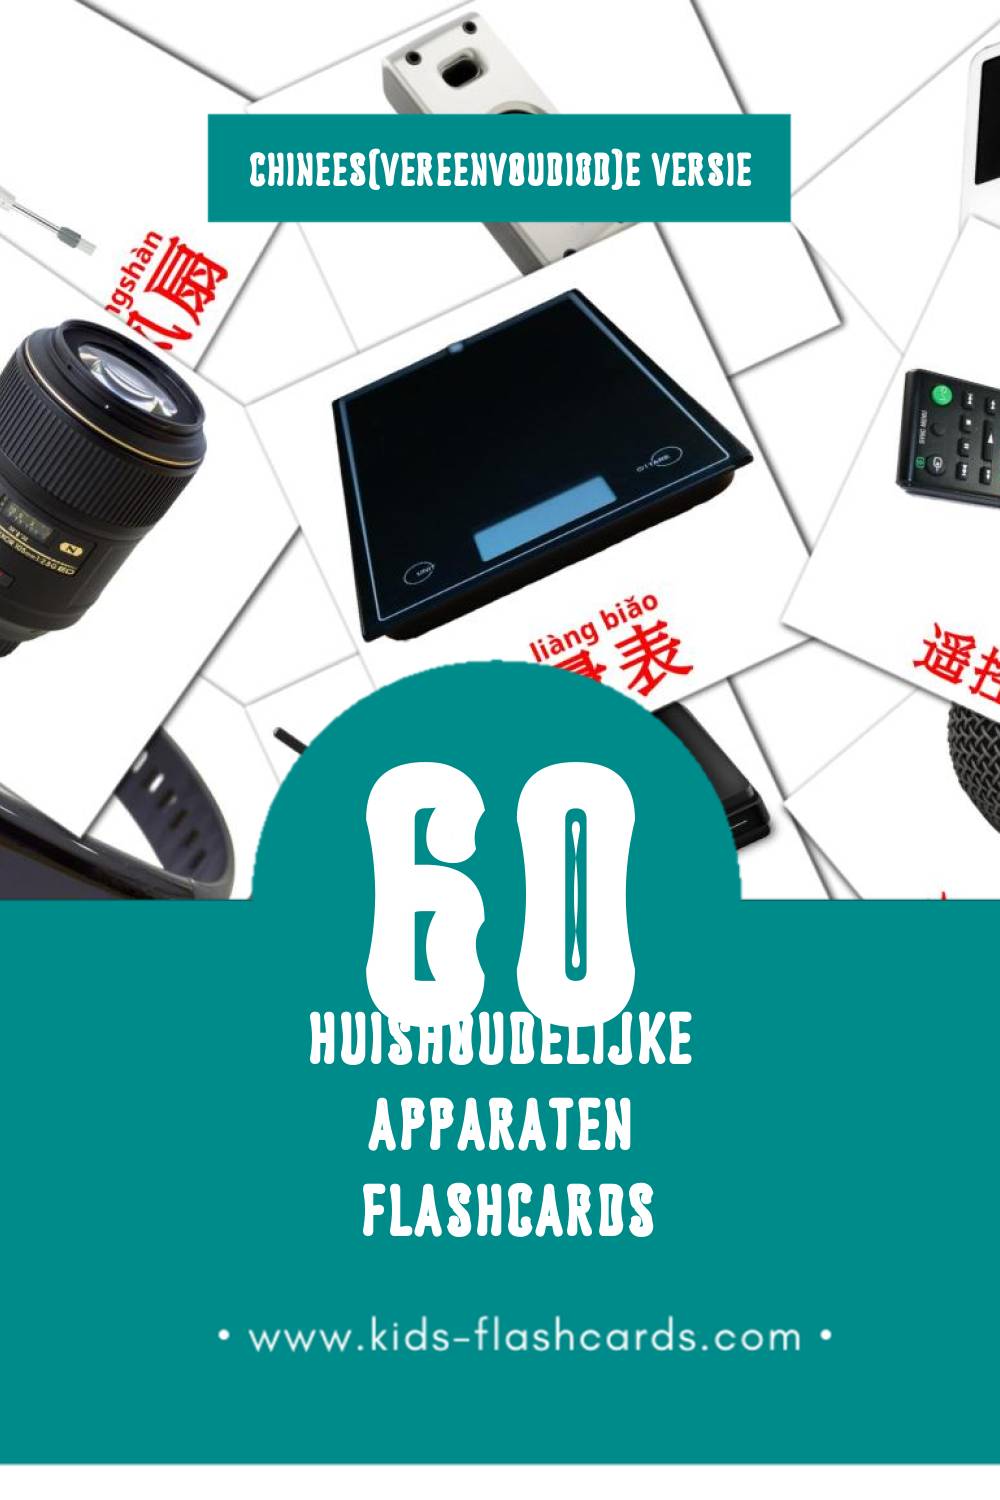 Visuele ‎家用电器‎ Flashcards voor Kleuters (60 kaarten in het Chinees(vereenvoudigd))